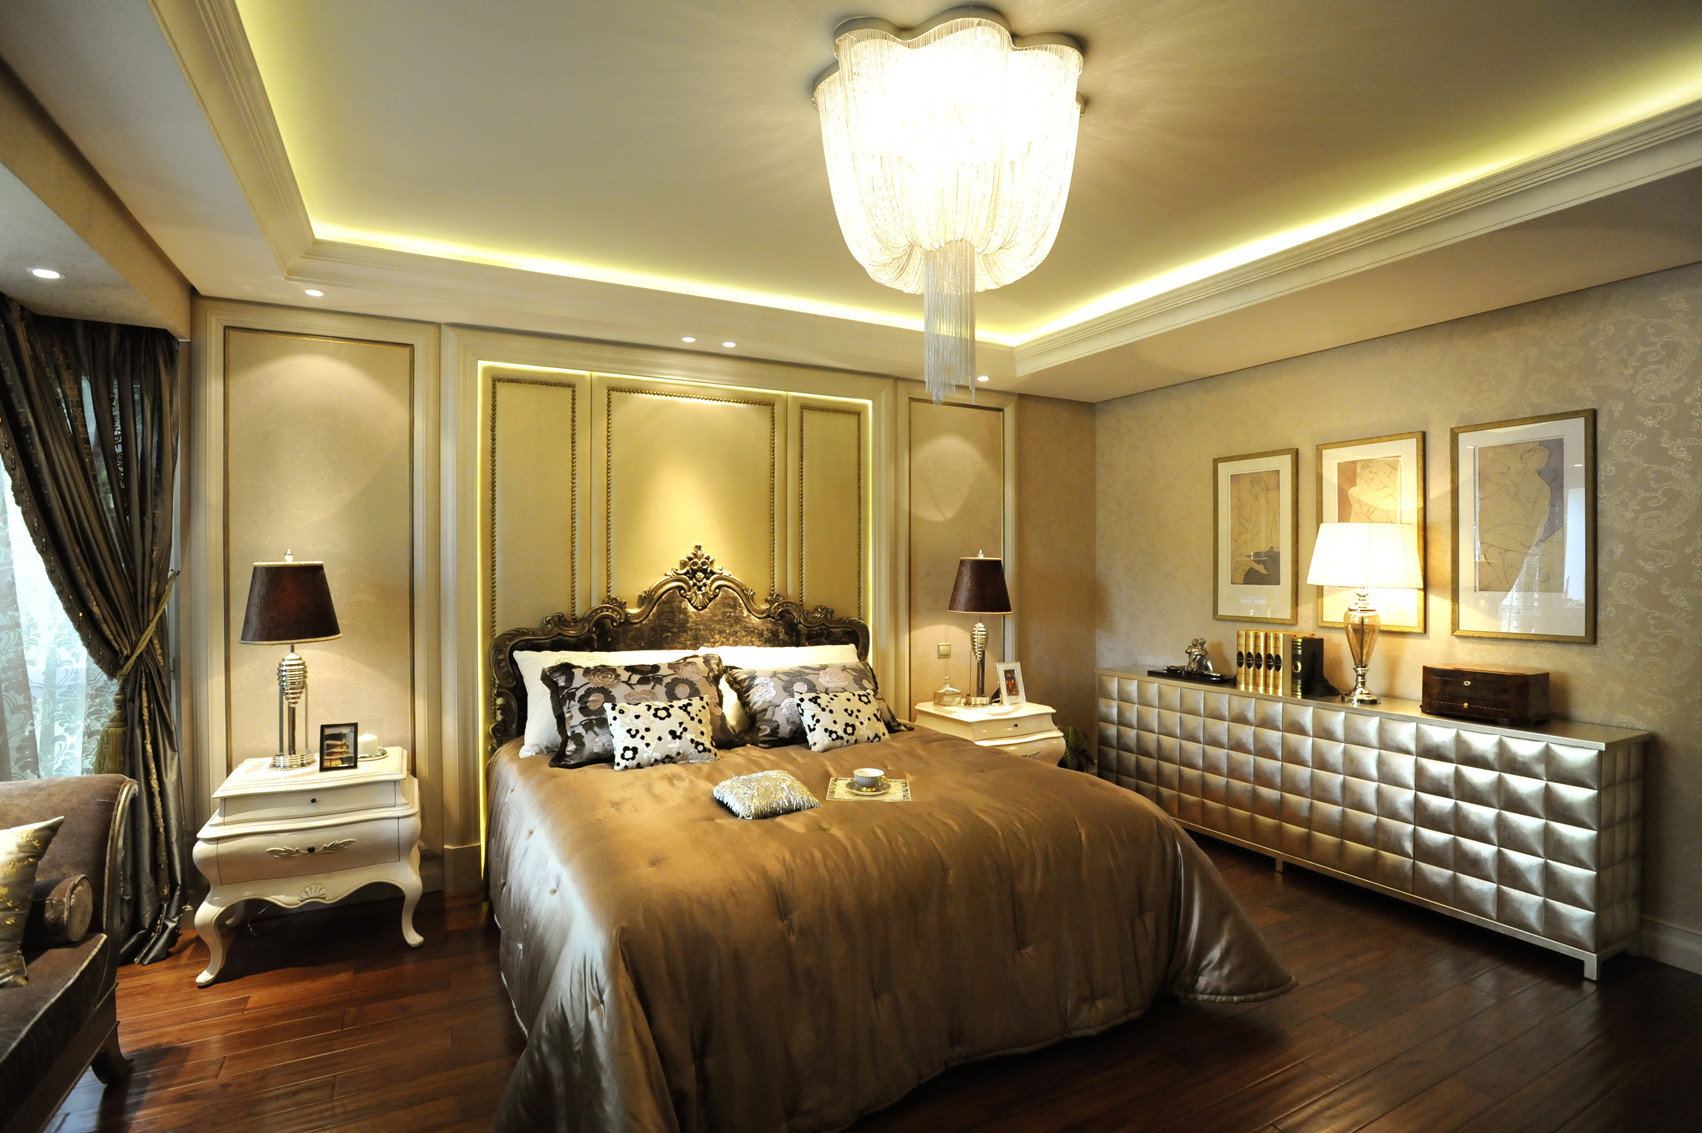 豪华型装修,大户型,140平米以上装修,卧室,欧式风格,卧室背景墙,暖色调